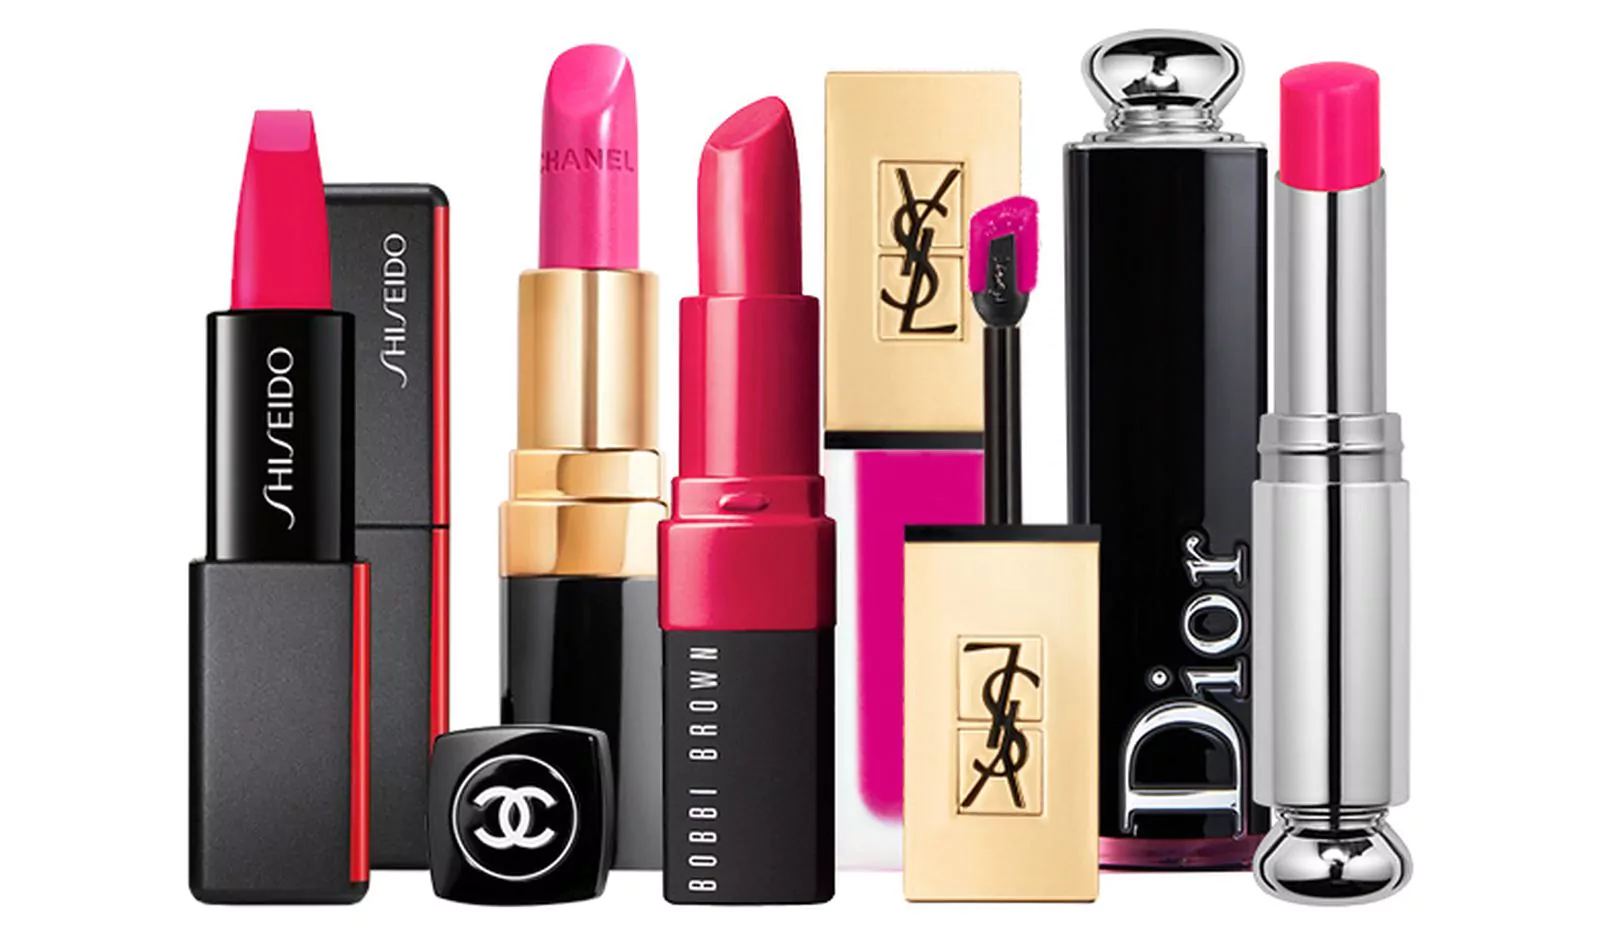 Shiseido ModernMatte, Chanel Rouge Coco, Bobbi Brown Crushed Lip Colo, YSL Tatouage Couture, Dior Addict Lacquer Stick